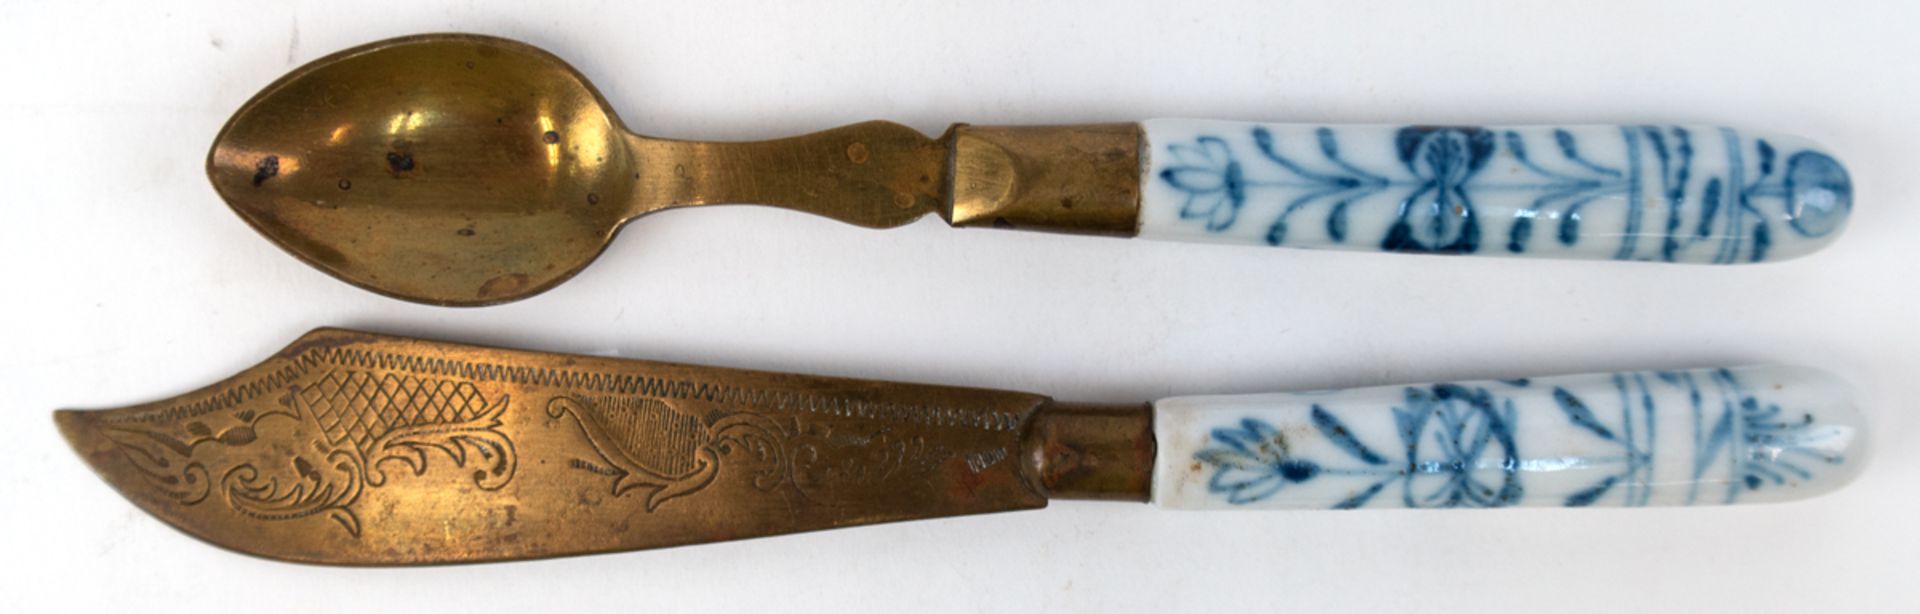 Löffel und Messer, Zwiebelmuster-Porzellangriffe, Messing-Laffe und Schneide, L. 15 cm und 17 cm